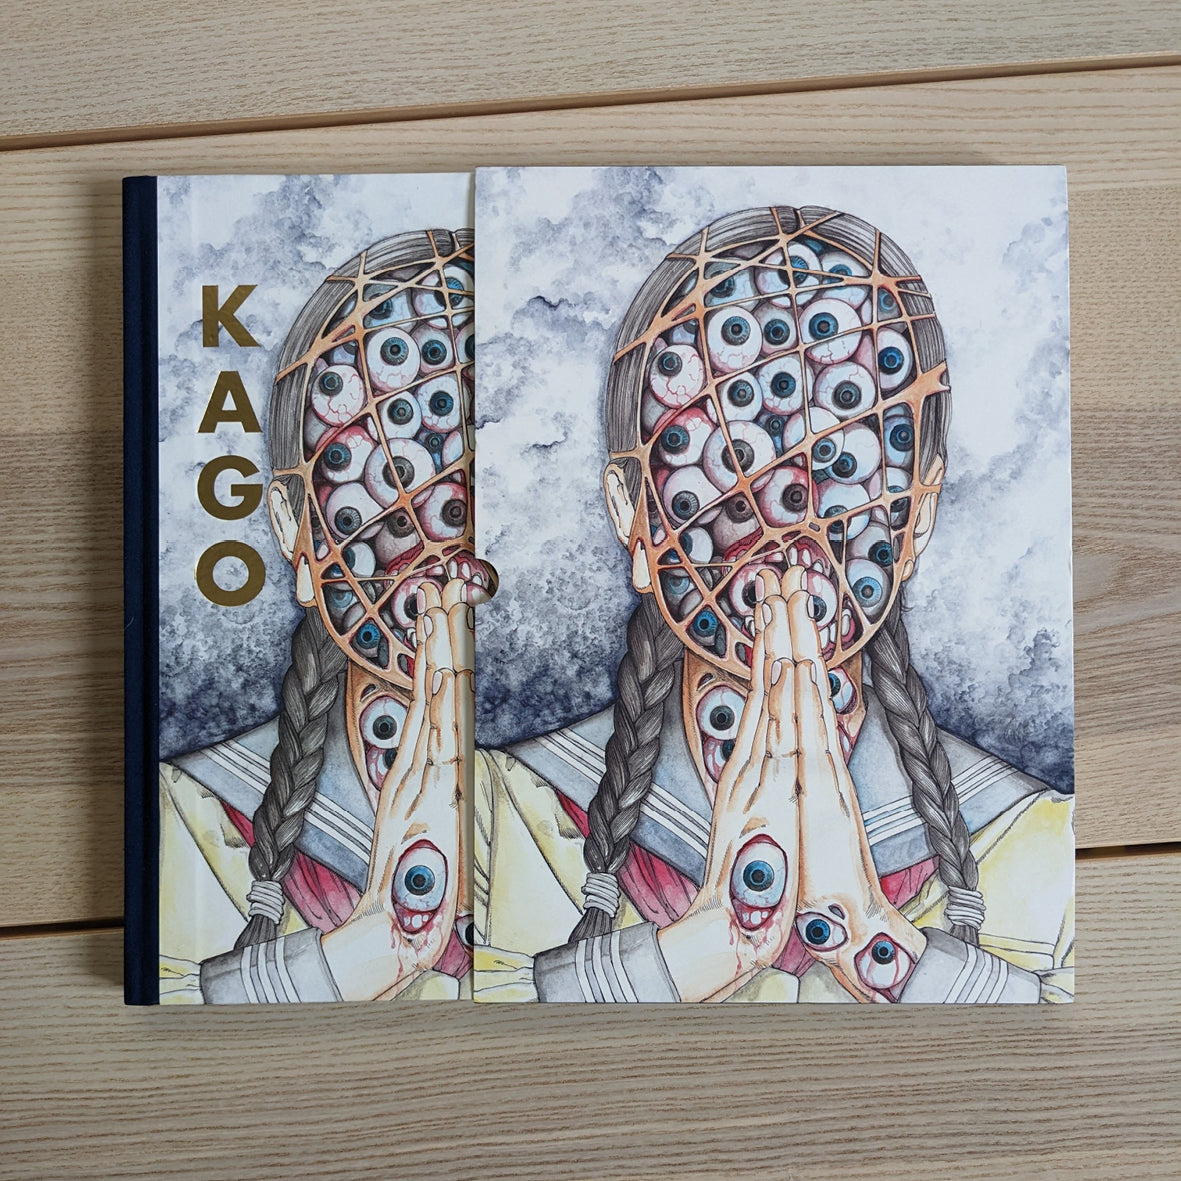 SHINTARO KAGO : ARTBOOK VOL.2 (299 COPIES LIMITED EDITION) 24 EXCLUSIVE PAGES !